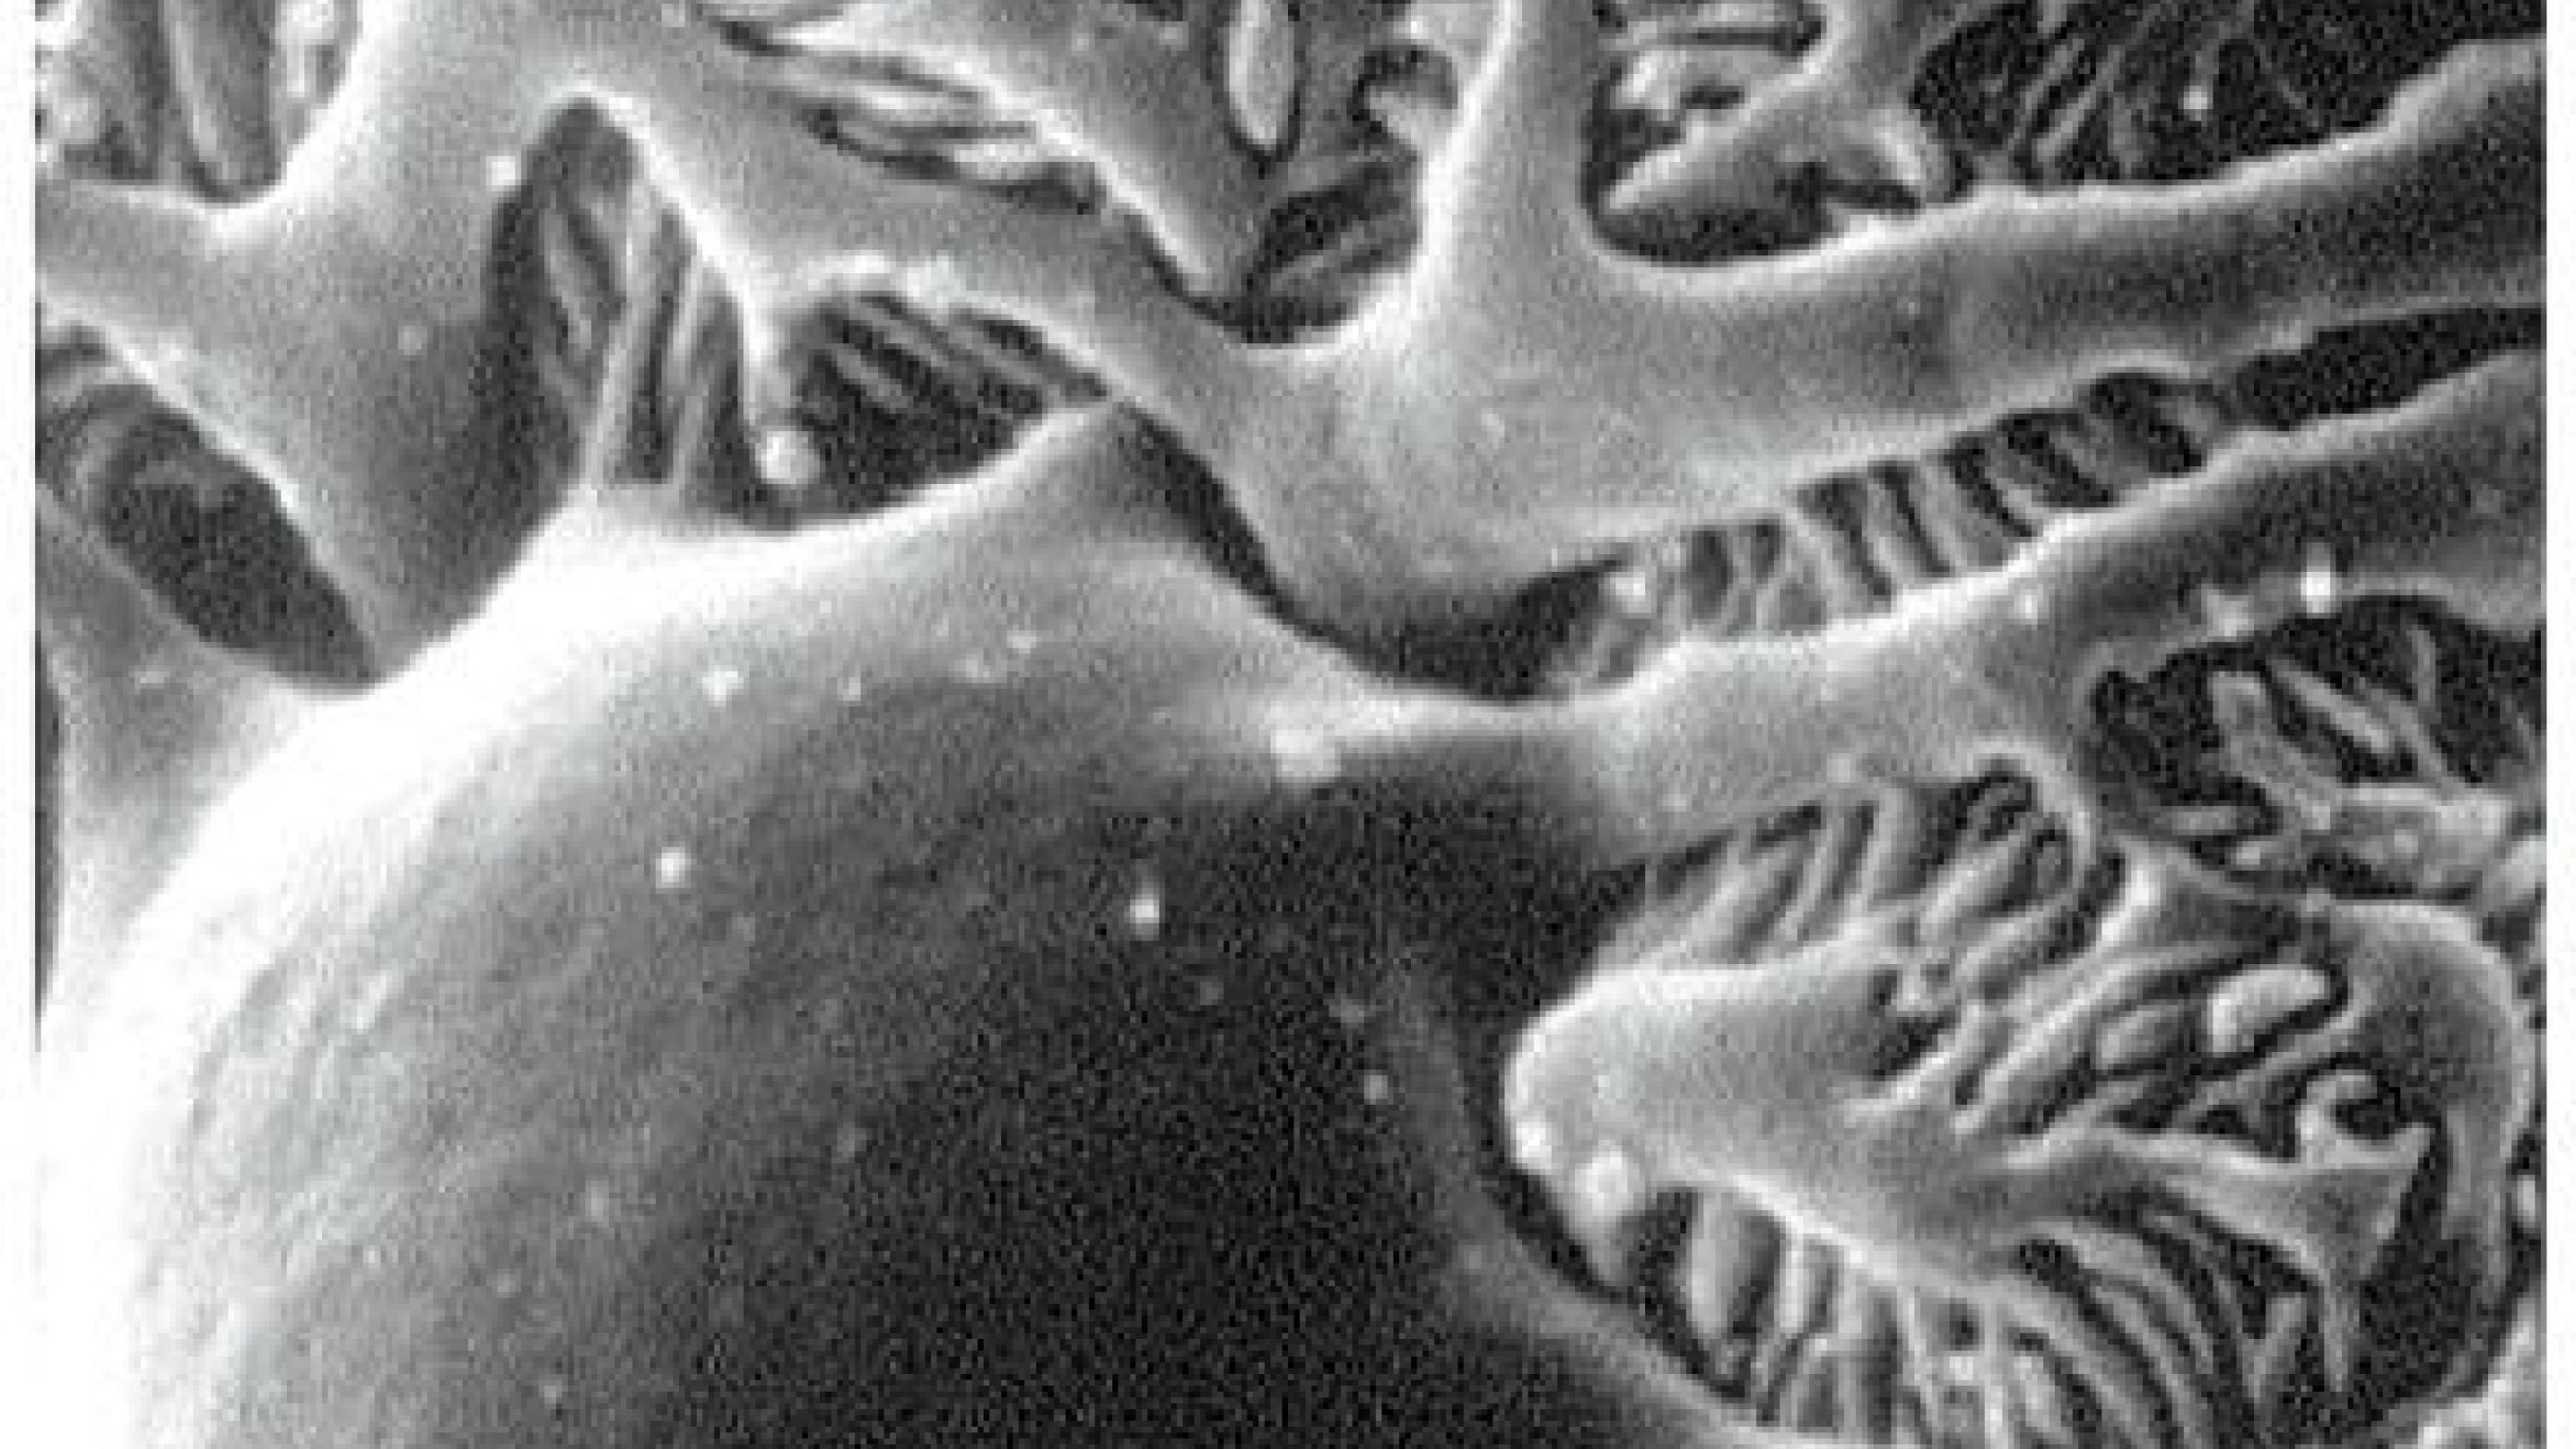 Elektronmikroskopisk billede af glomerulus.